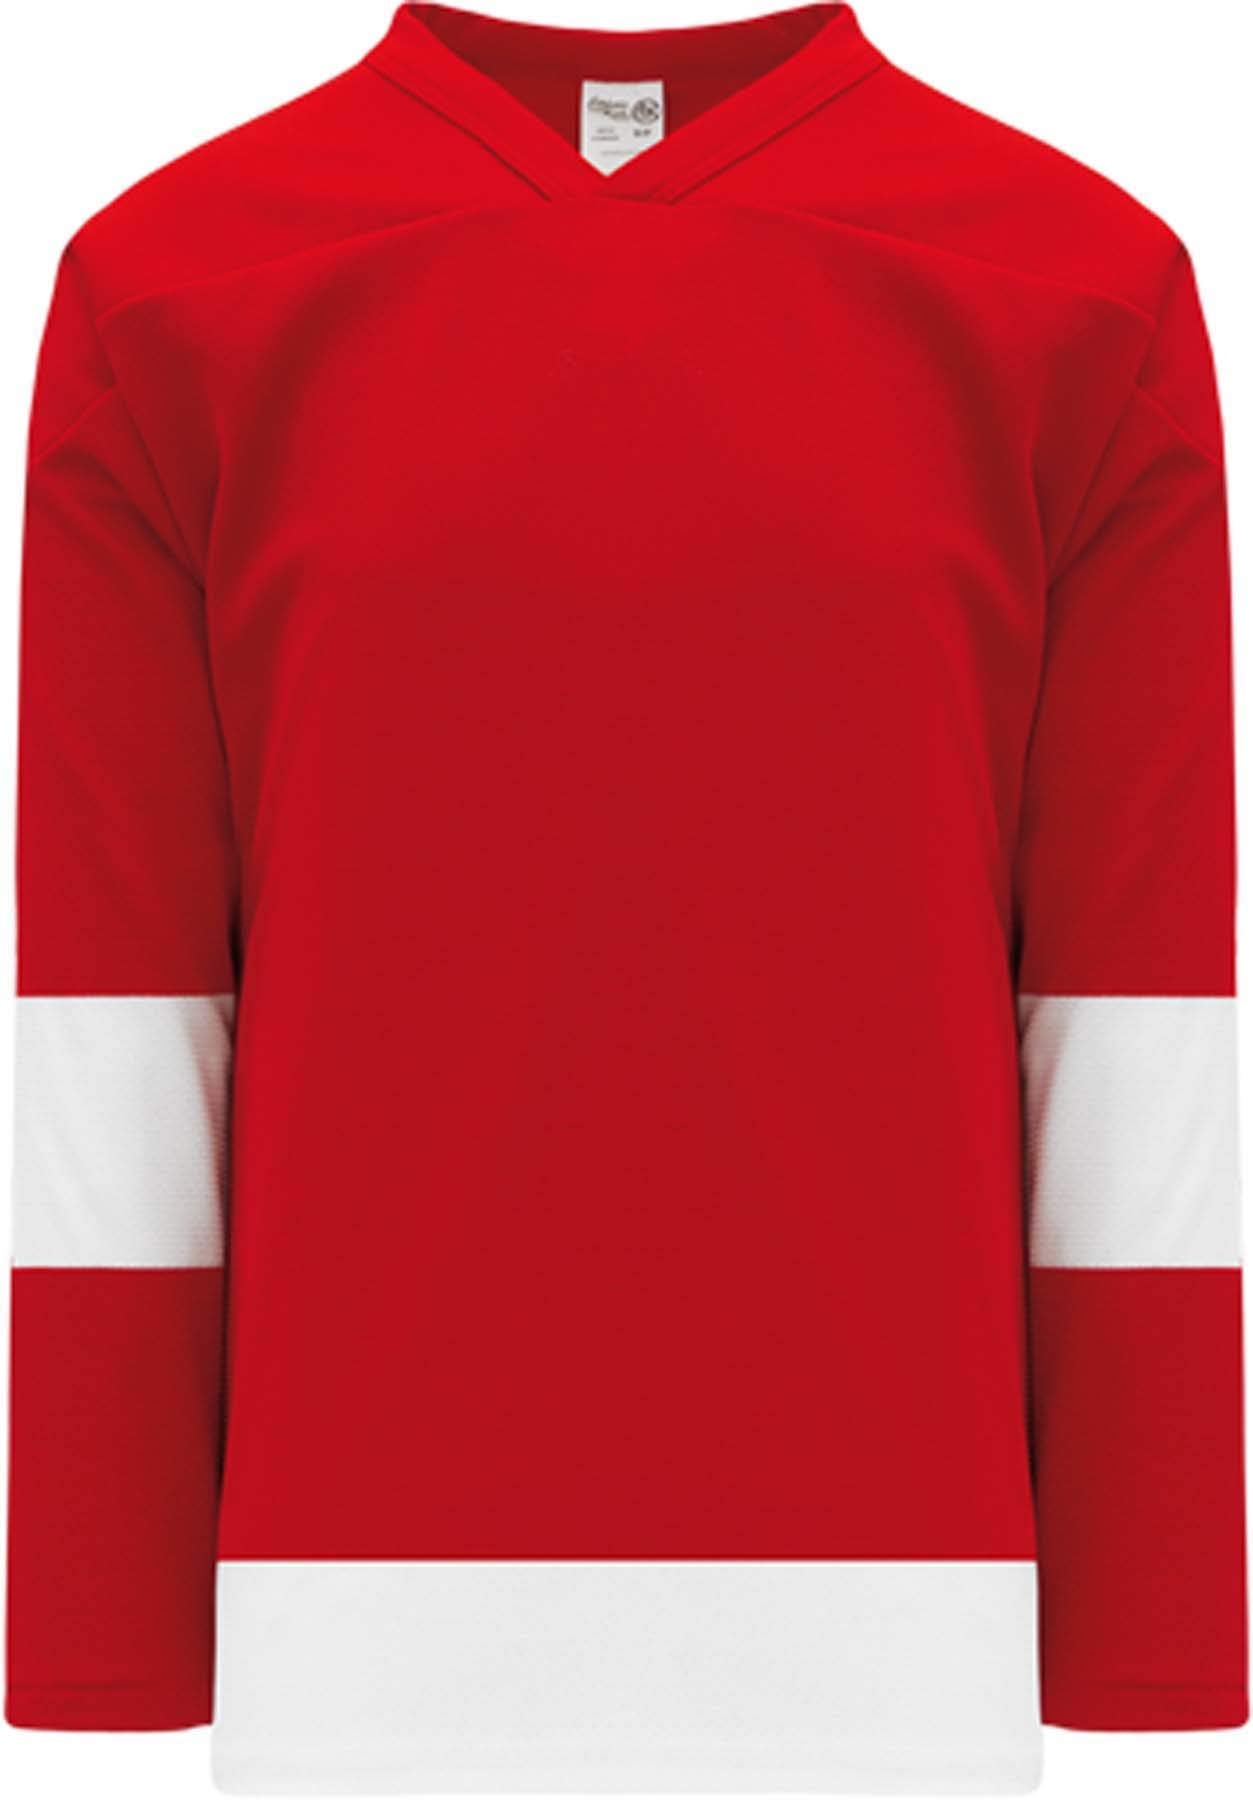 Detroit RED Sleeve Stripes Pro Canada / USA Made  Hockey Jerseys